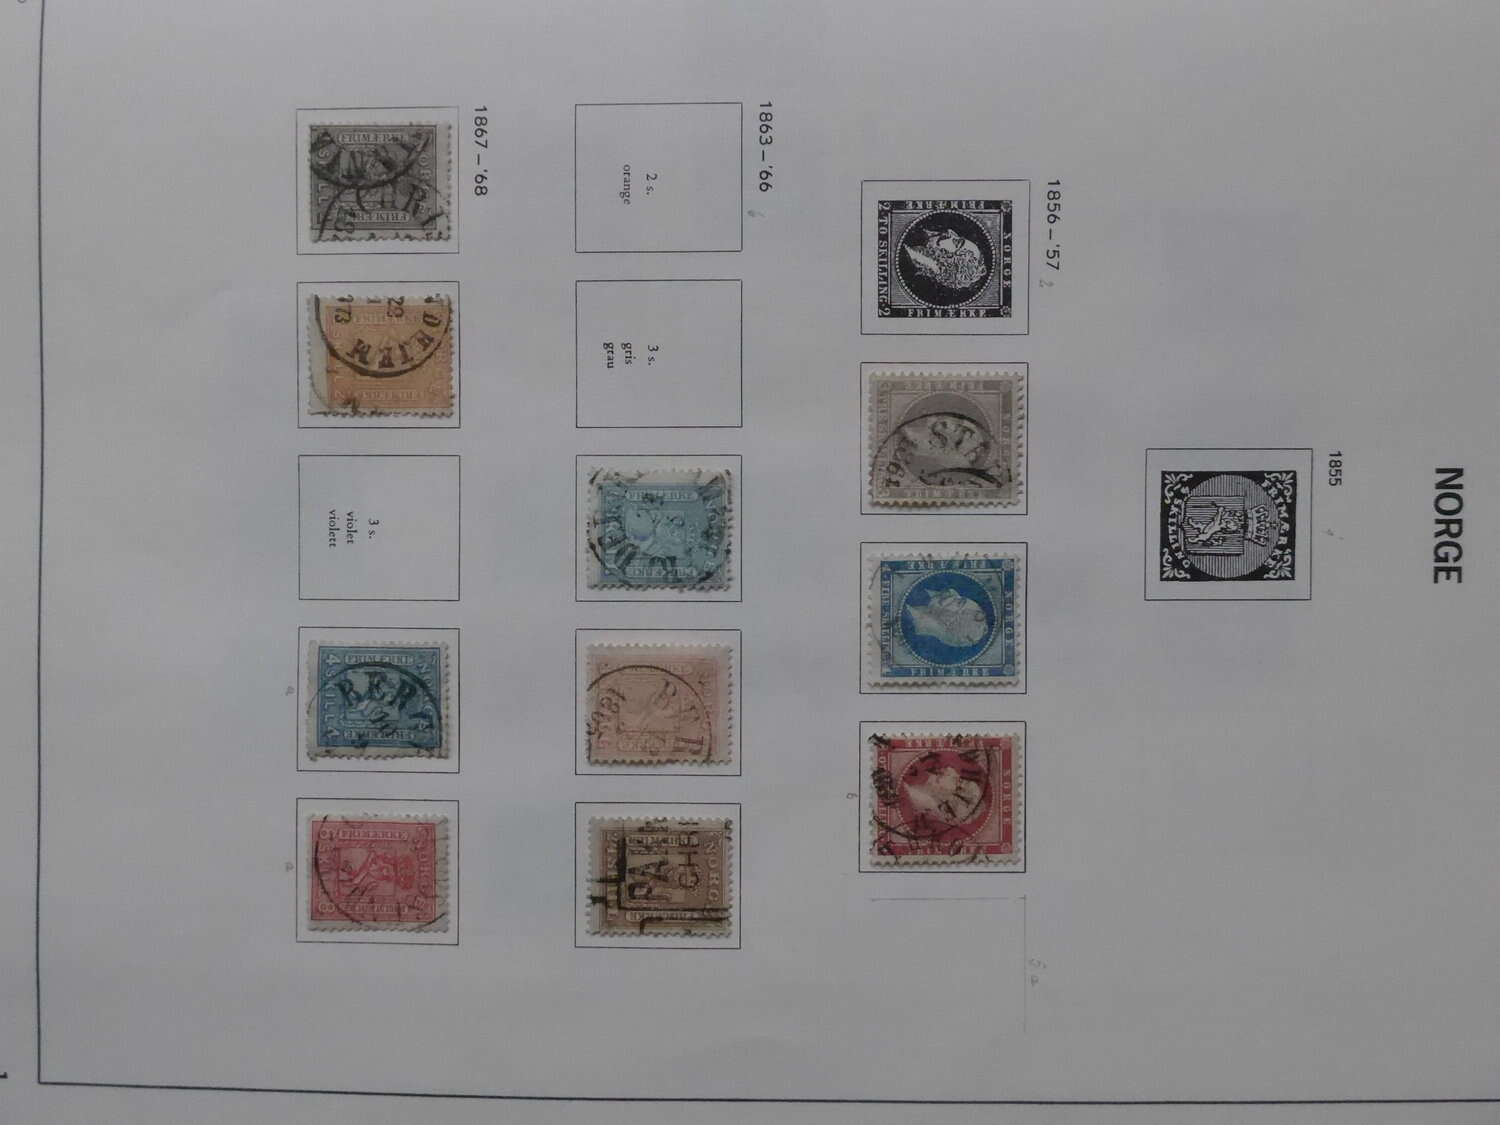 Lot 6 - sammlungen und posten sammlernachlässe -  Deutsche Briefmarken AG 6th Large Lot Auction Deutsche Briefmarken AG